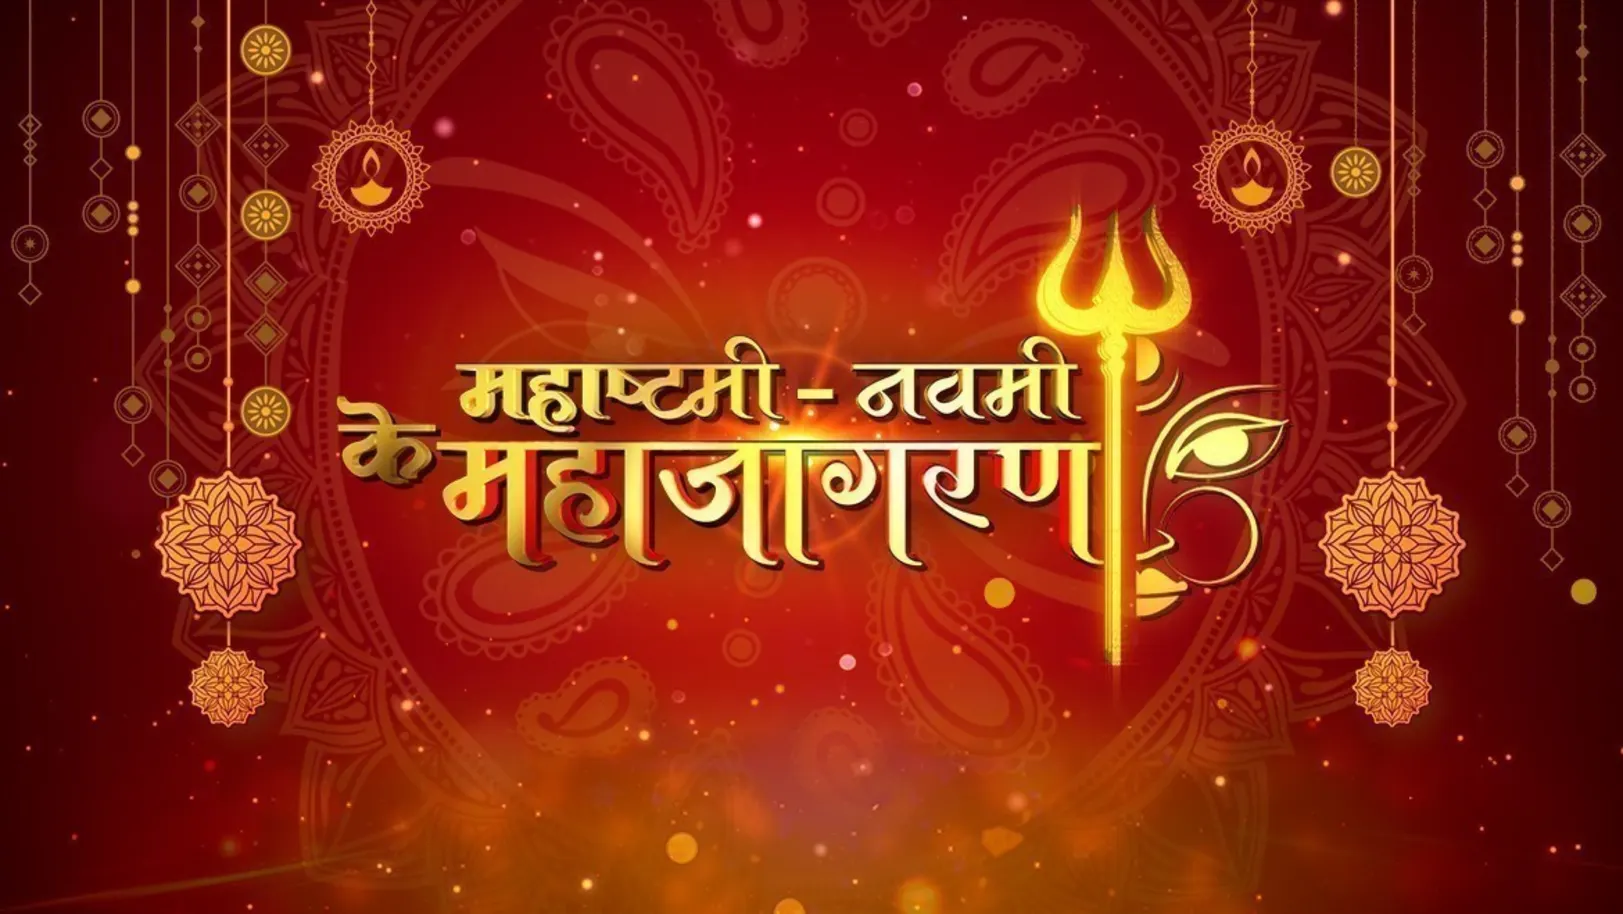 Maha Astami- Navami ke Maha Jagaran TV Show